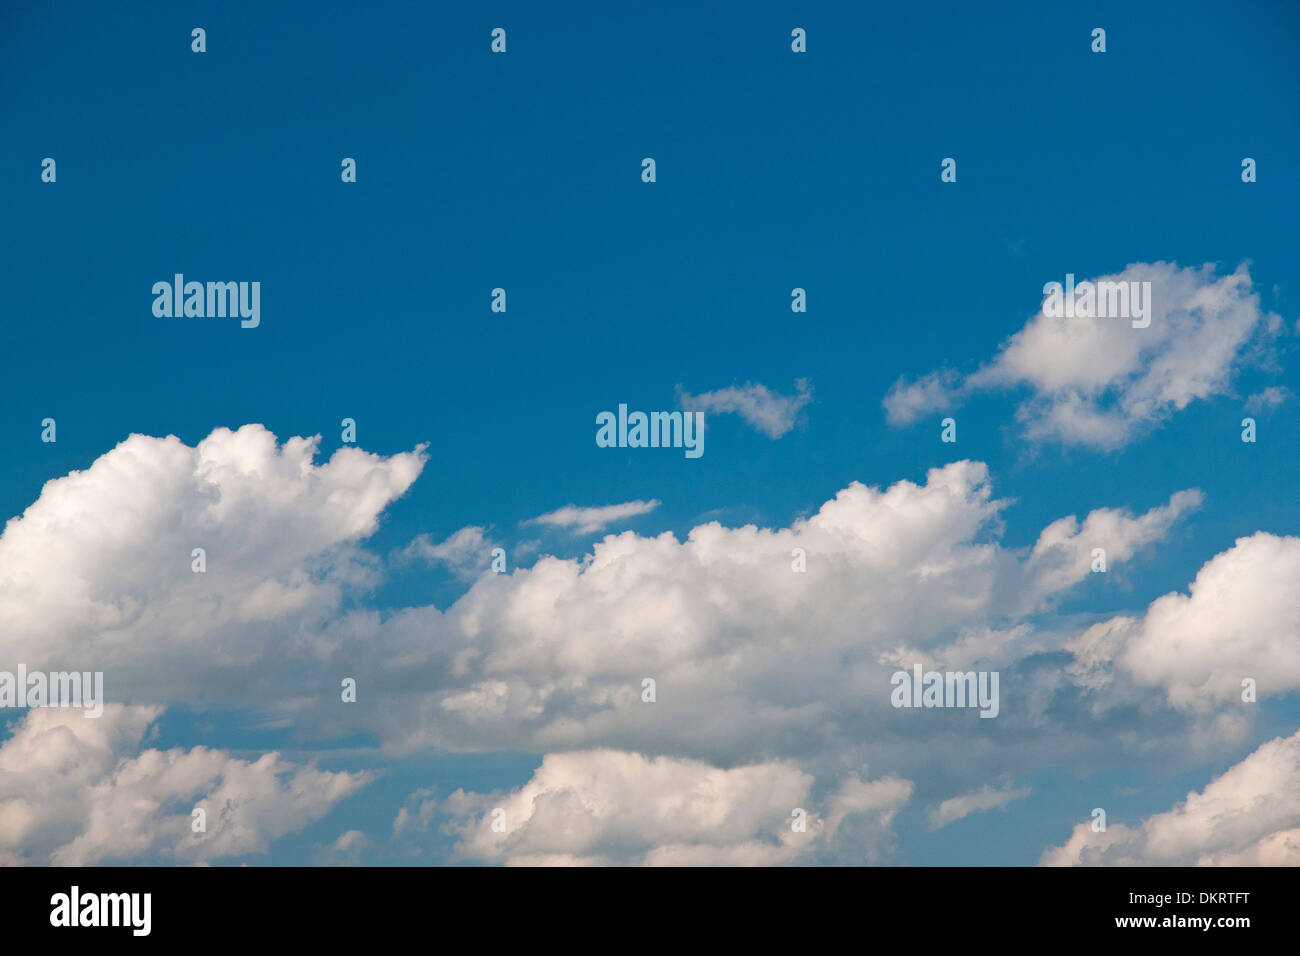 Deutschland, Europa, Himmel, blauer Himmel, Wolken, Schäfchenwolken, Cumulus-Wolken, Cumulus, Bildung, blau, weiß, Wetter, Wolke Stockfoto